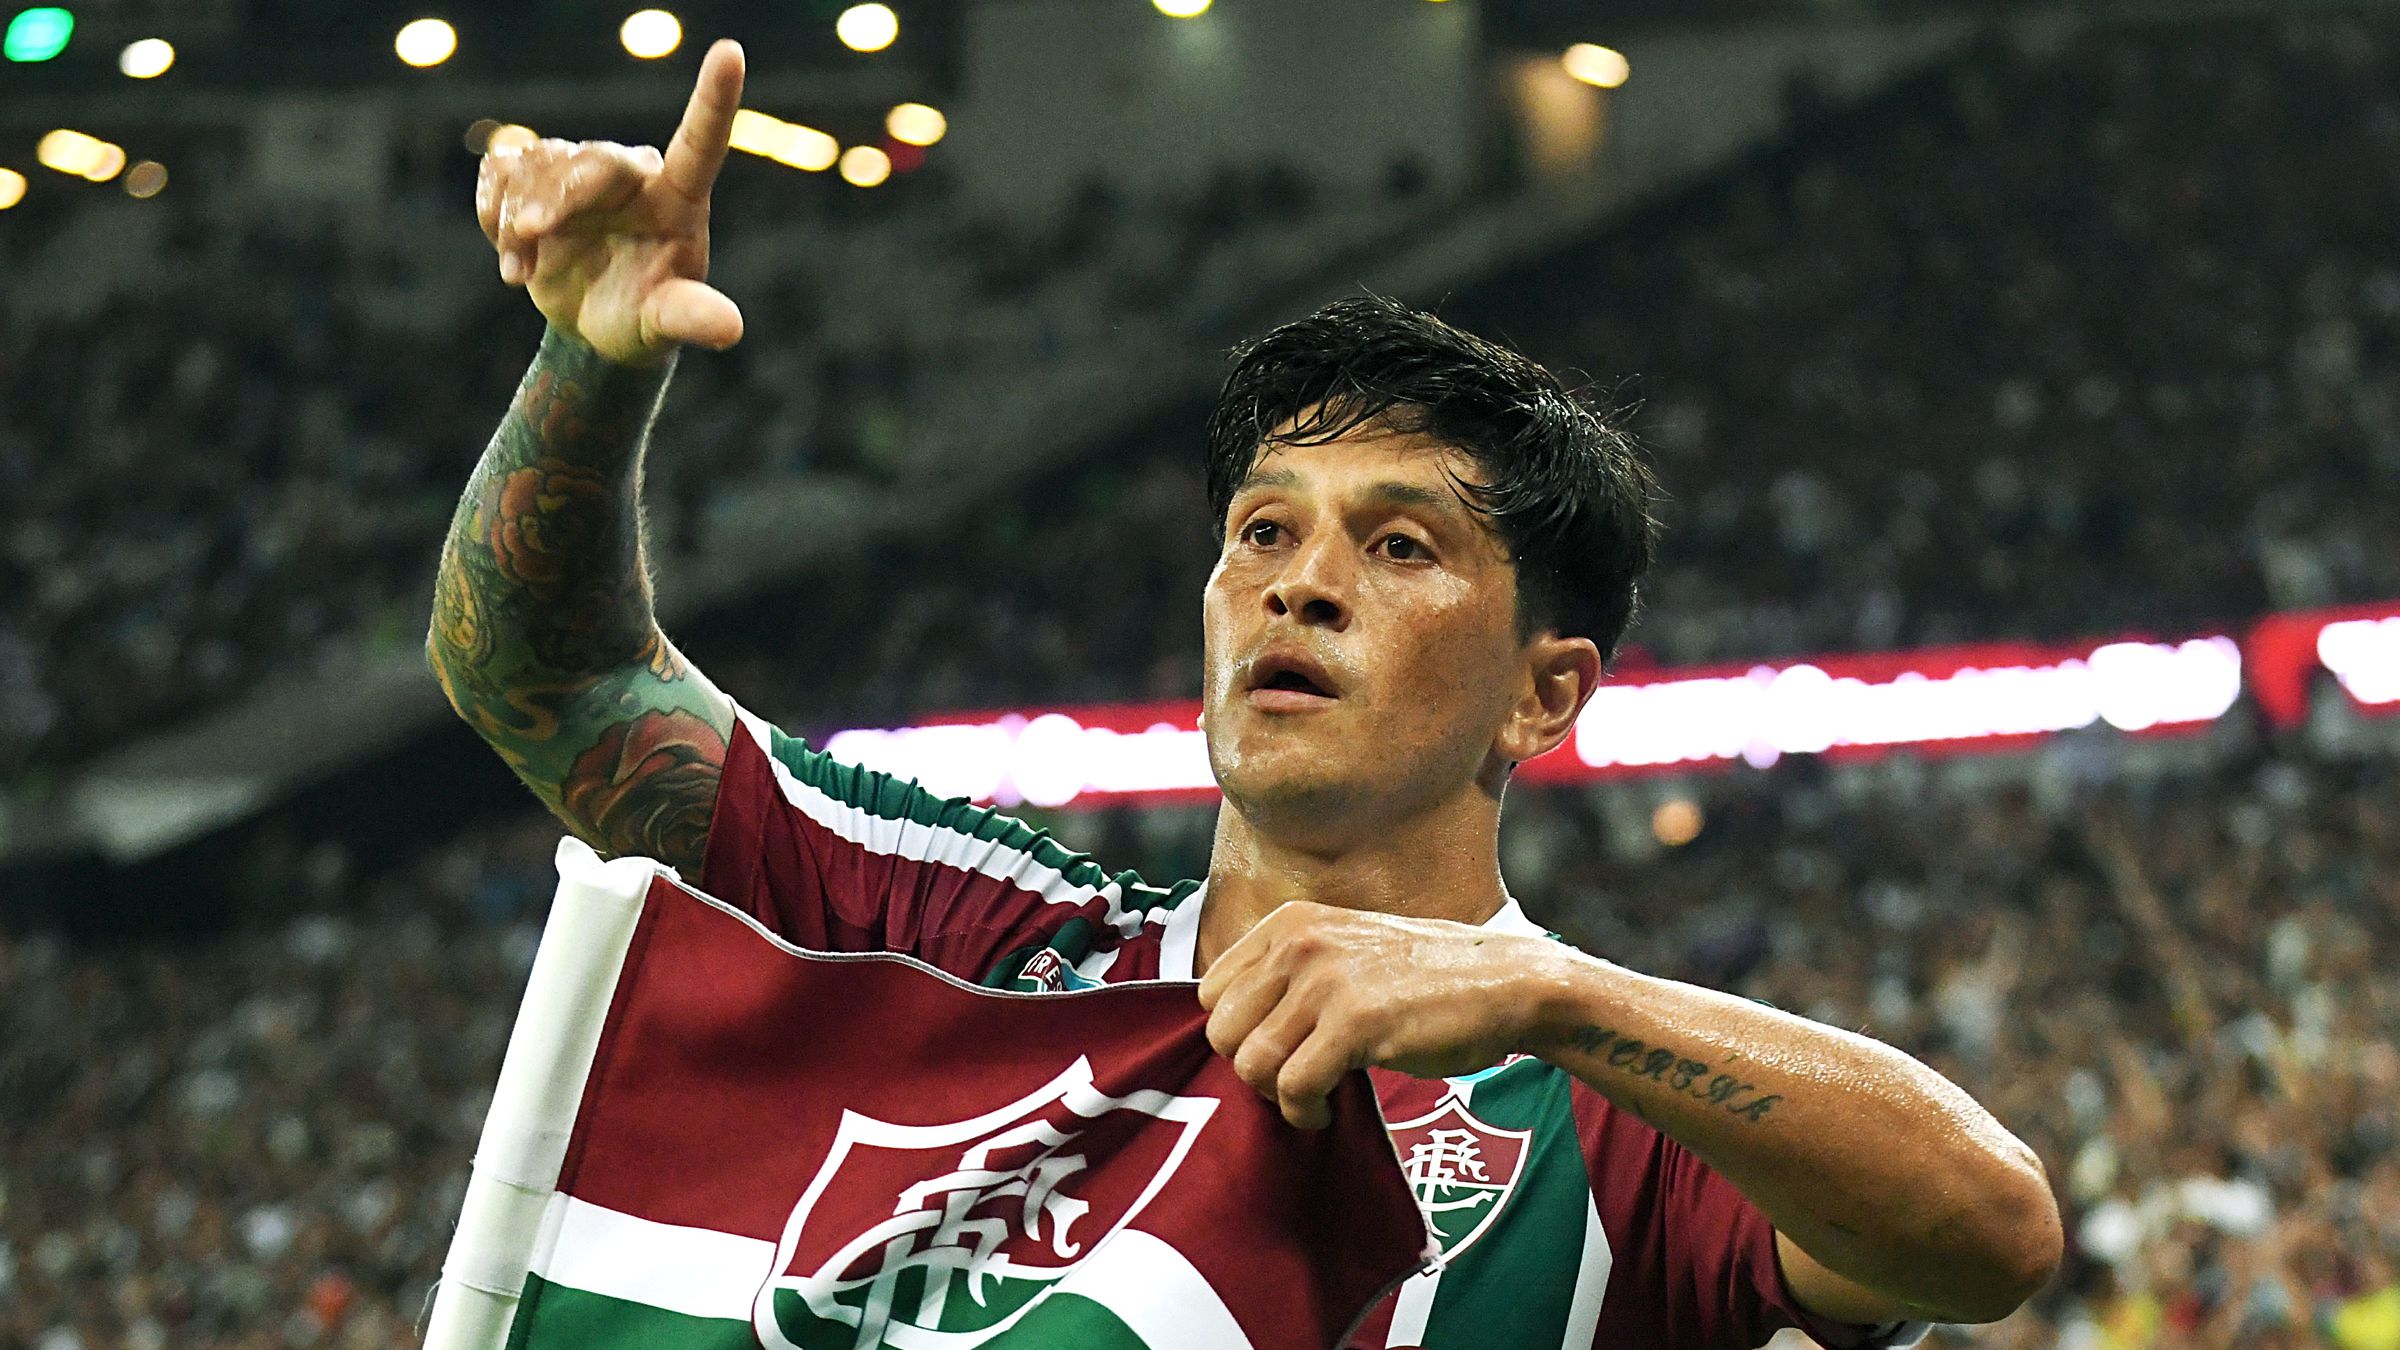 Cano comemorando gol marcado contra o Vasco (Crédito: Marcelo Gonçalves / Fluminense)